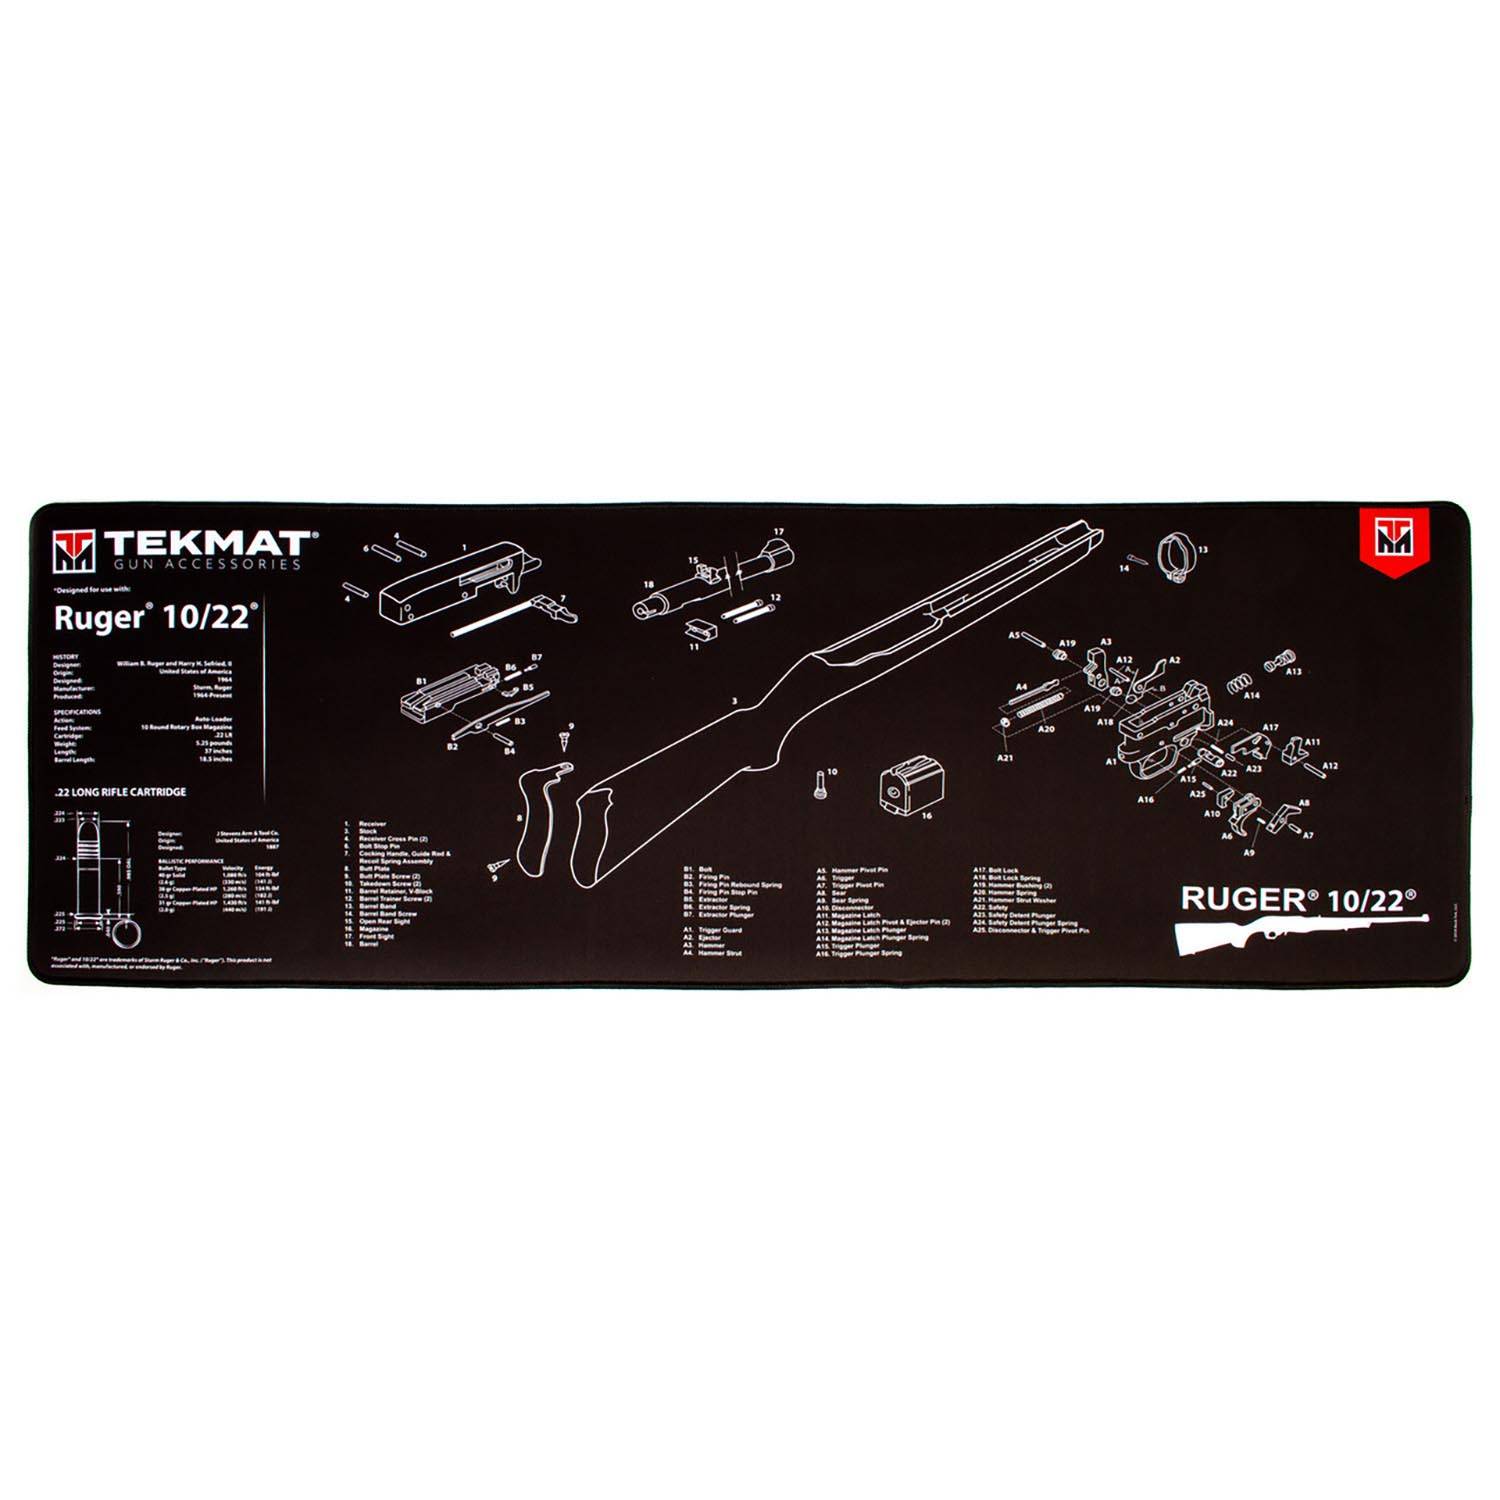 TekMat Ruger 10/22 Gun Cleaning Mat 36